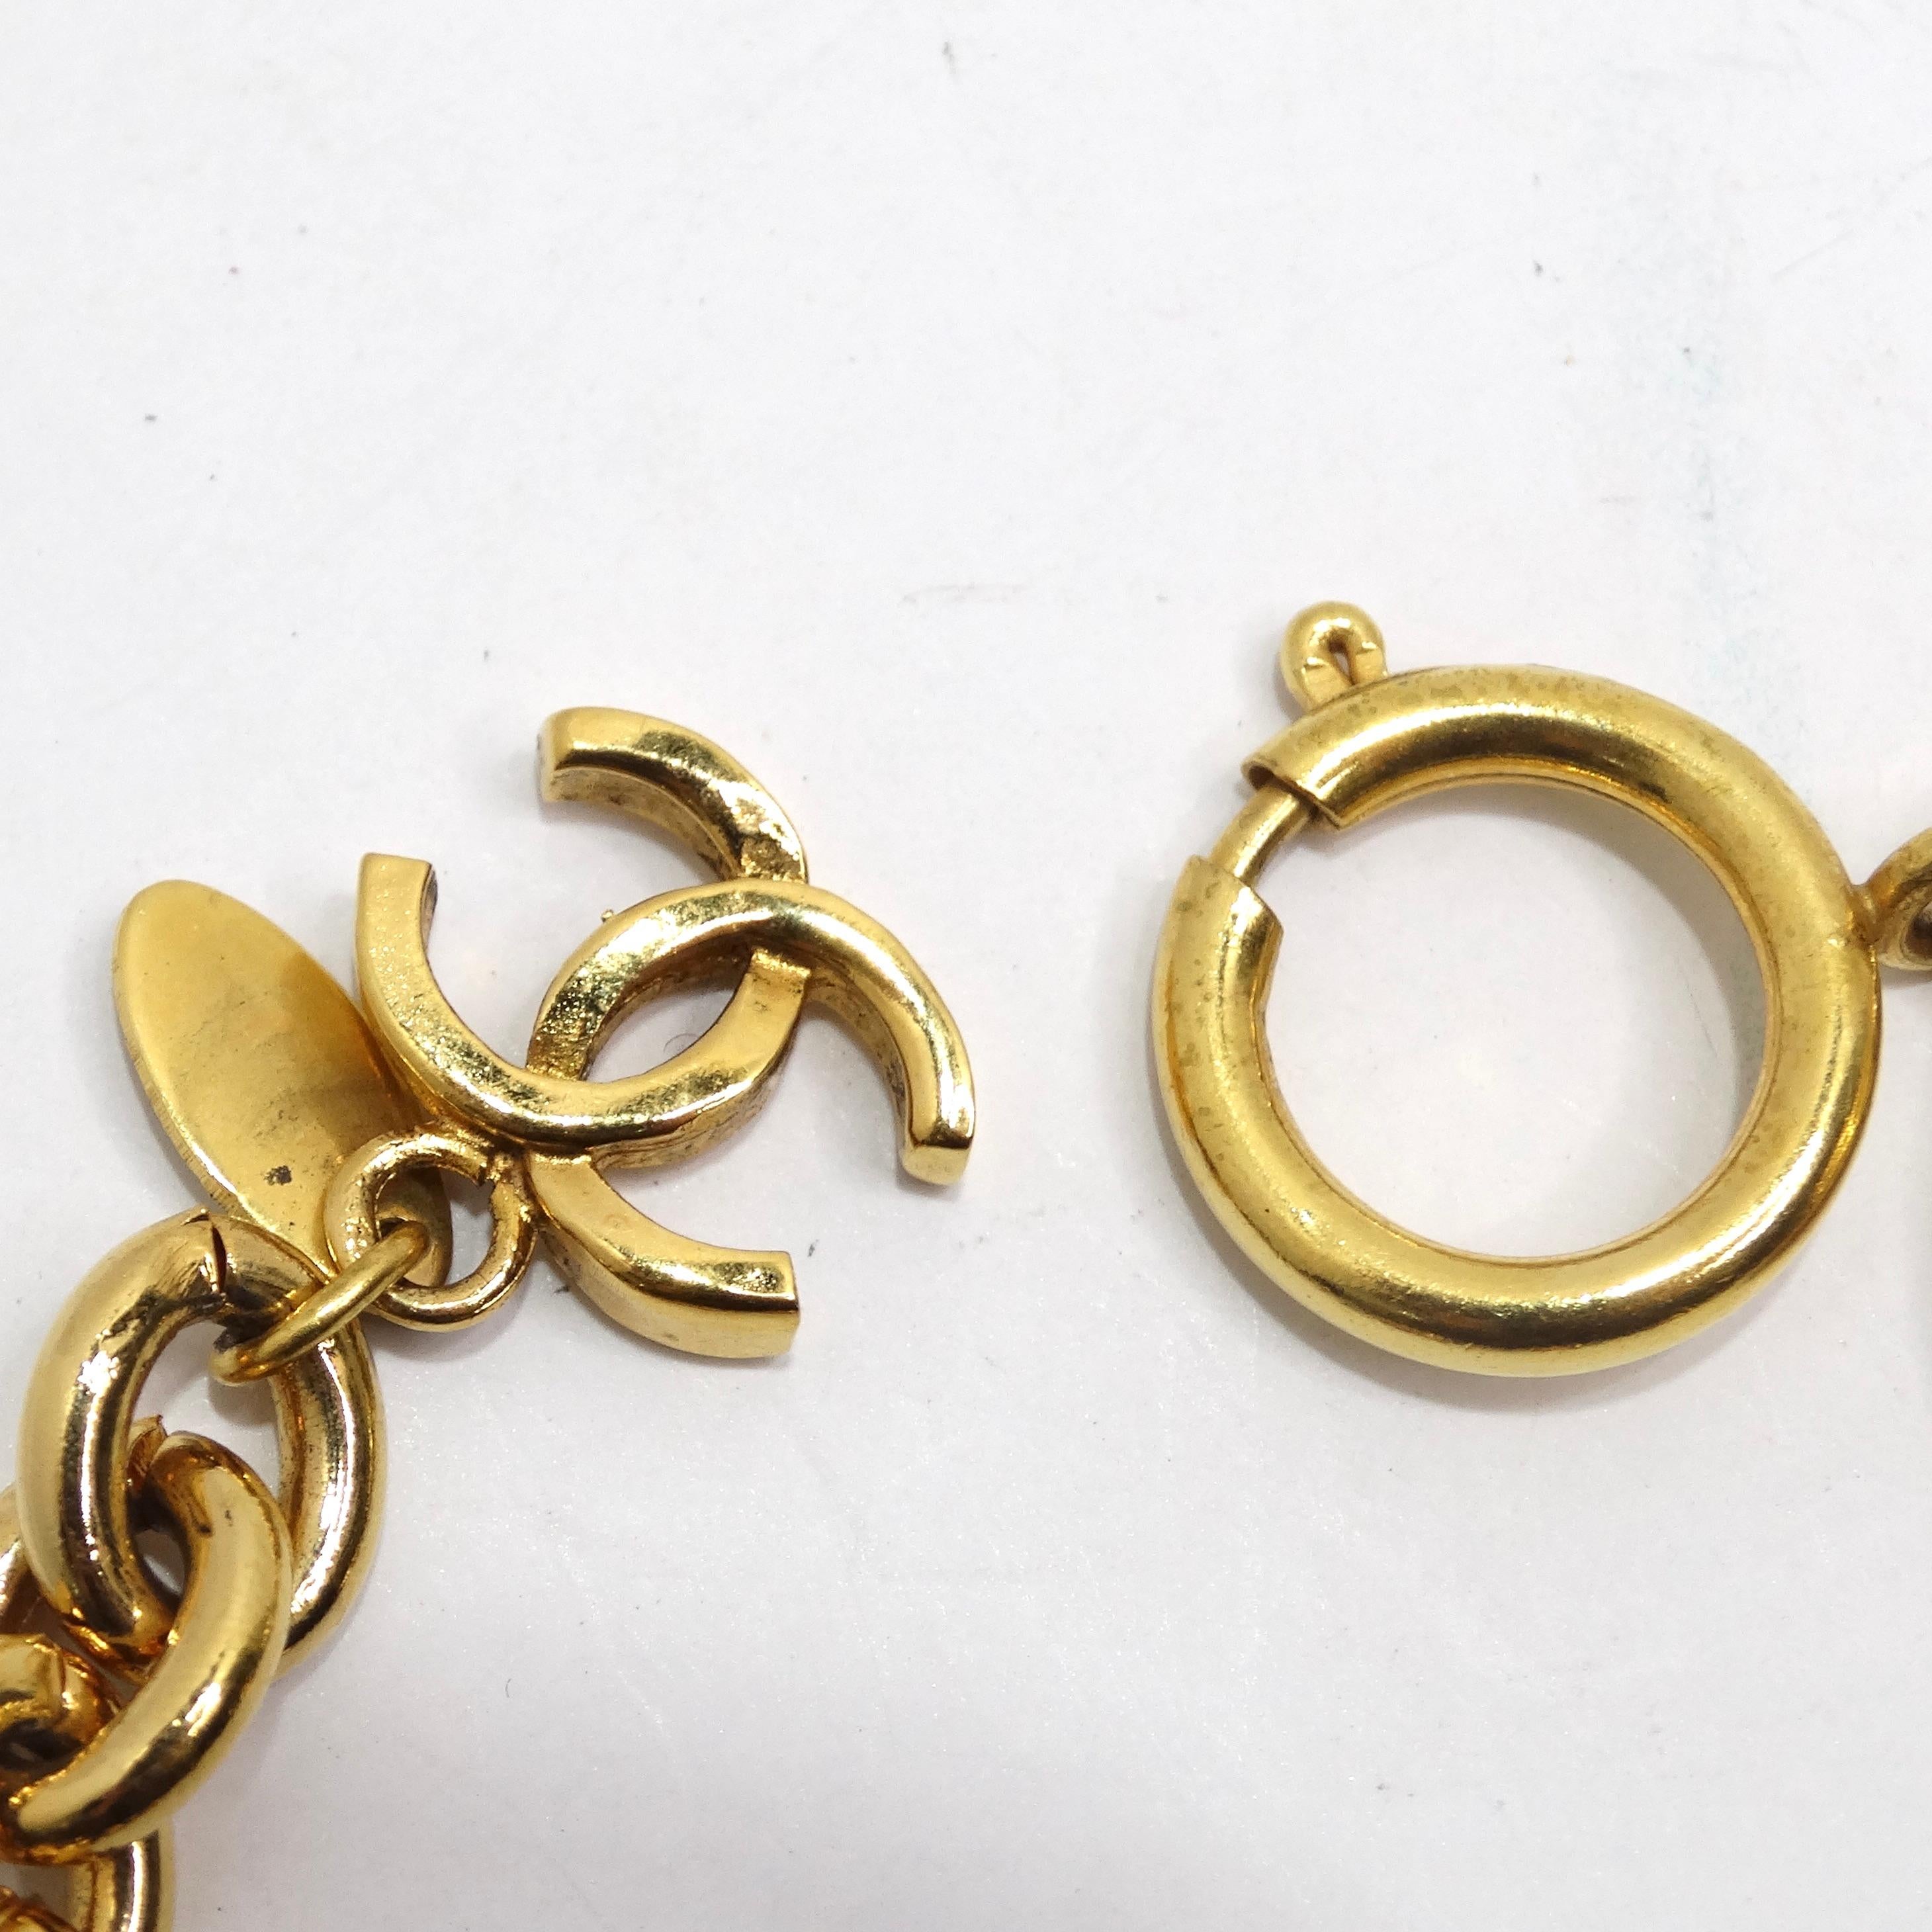 Das Chanel Classic Quilted Coin Link Gold Plated Bracelet ist ein zeitloses Stück, das die unverwechselbare Eleganz von Chanel verkörpert. Dieses vergoldete Armband besteht aus gesteppten Münzgliedern, die mit dem klassischen, ineinandergreifenden